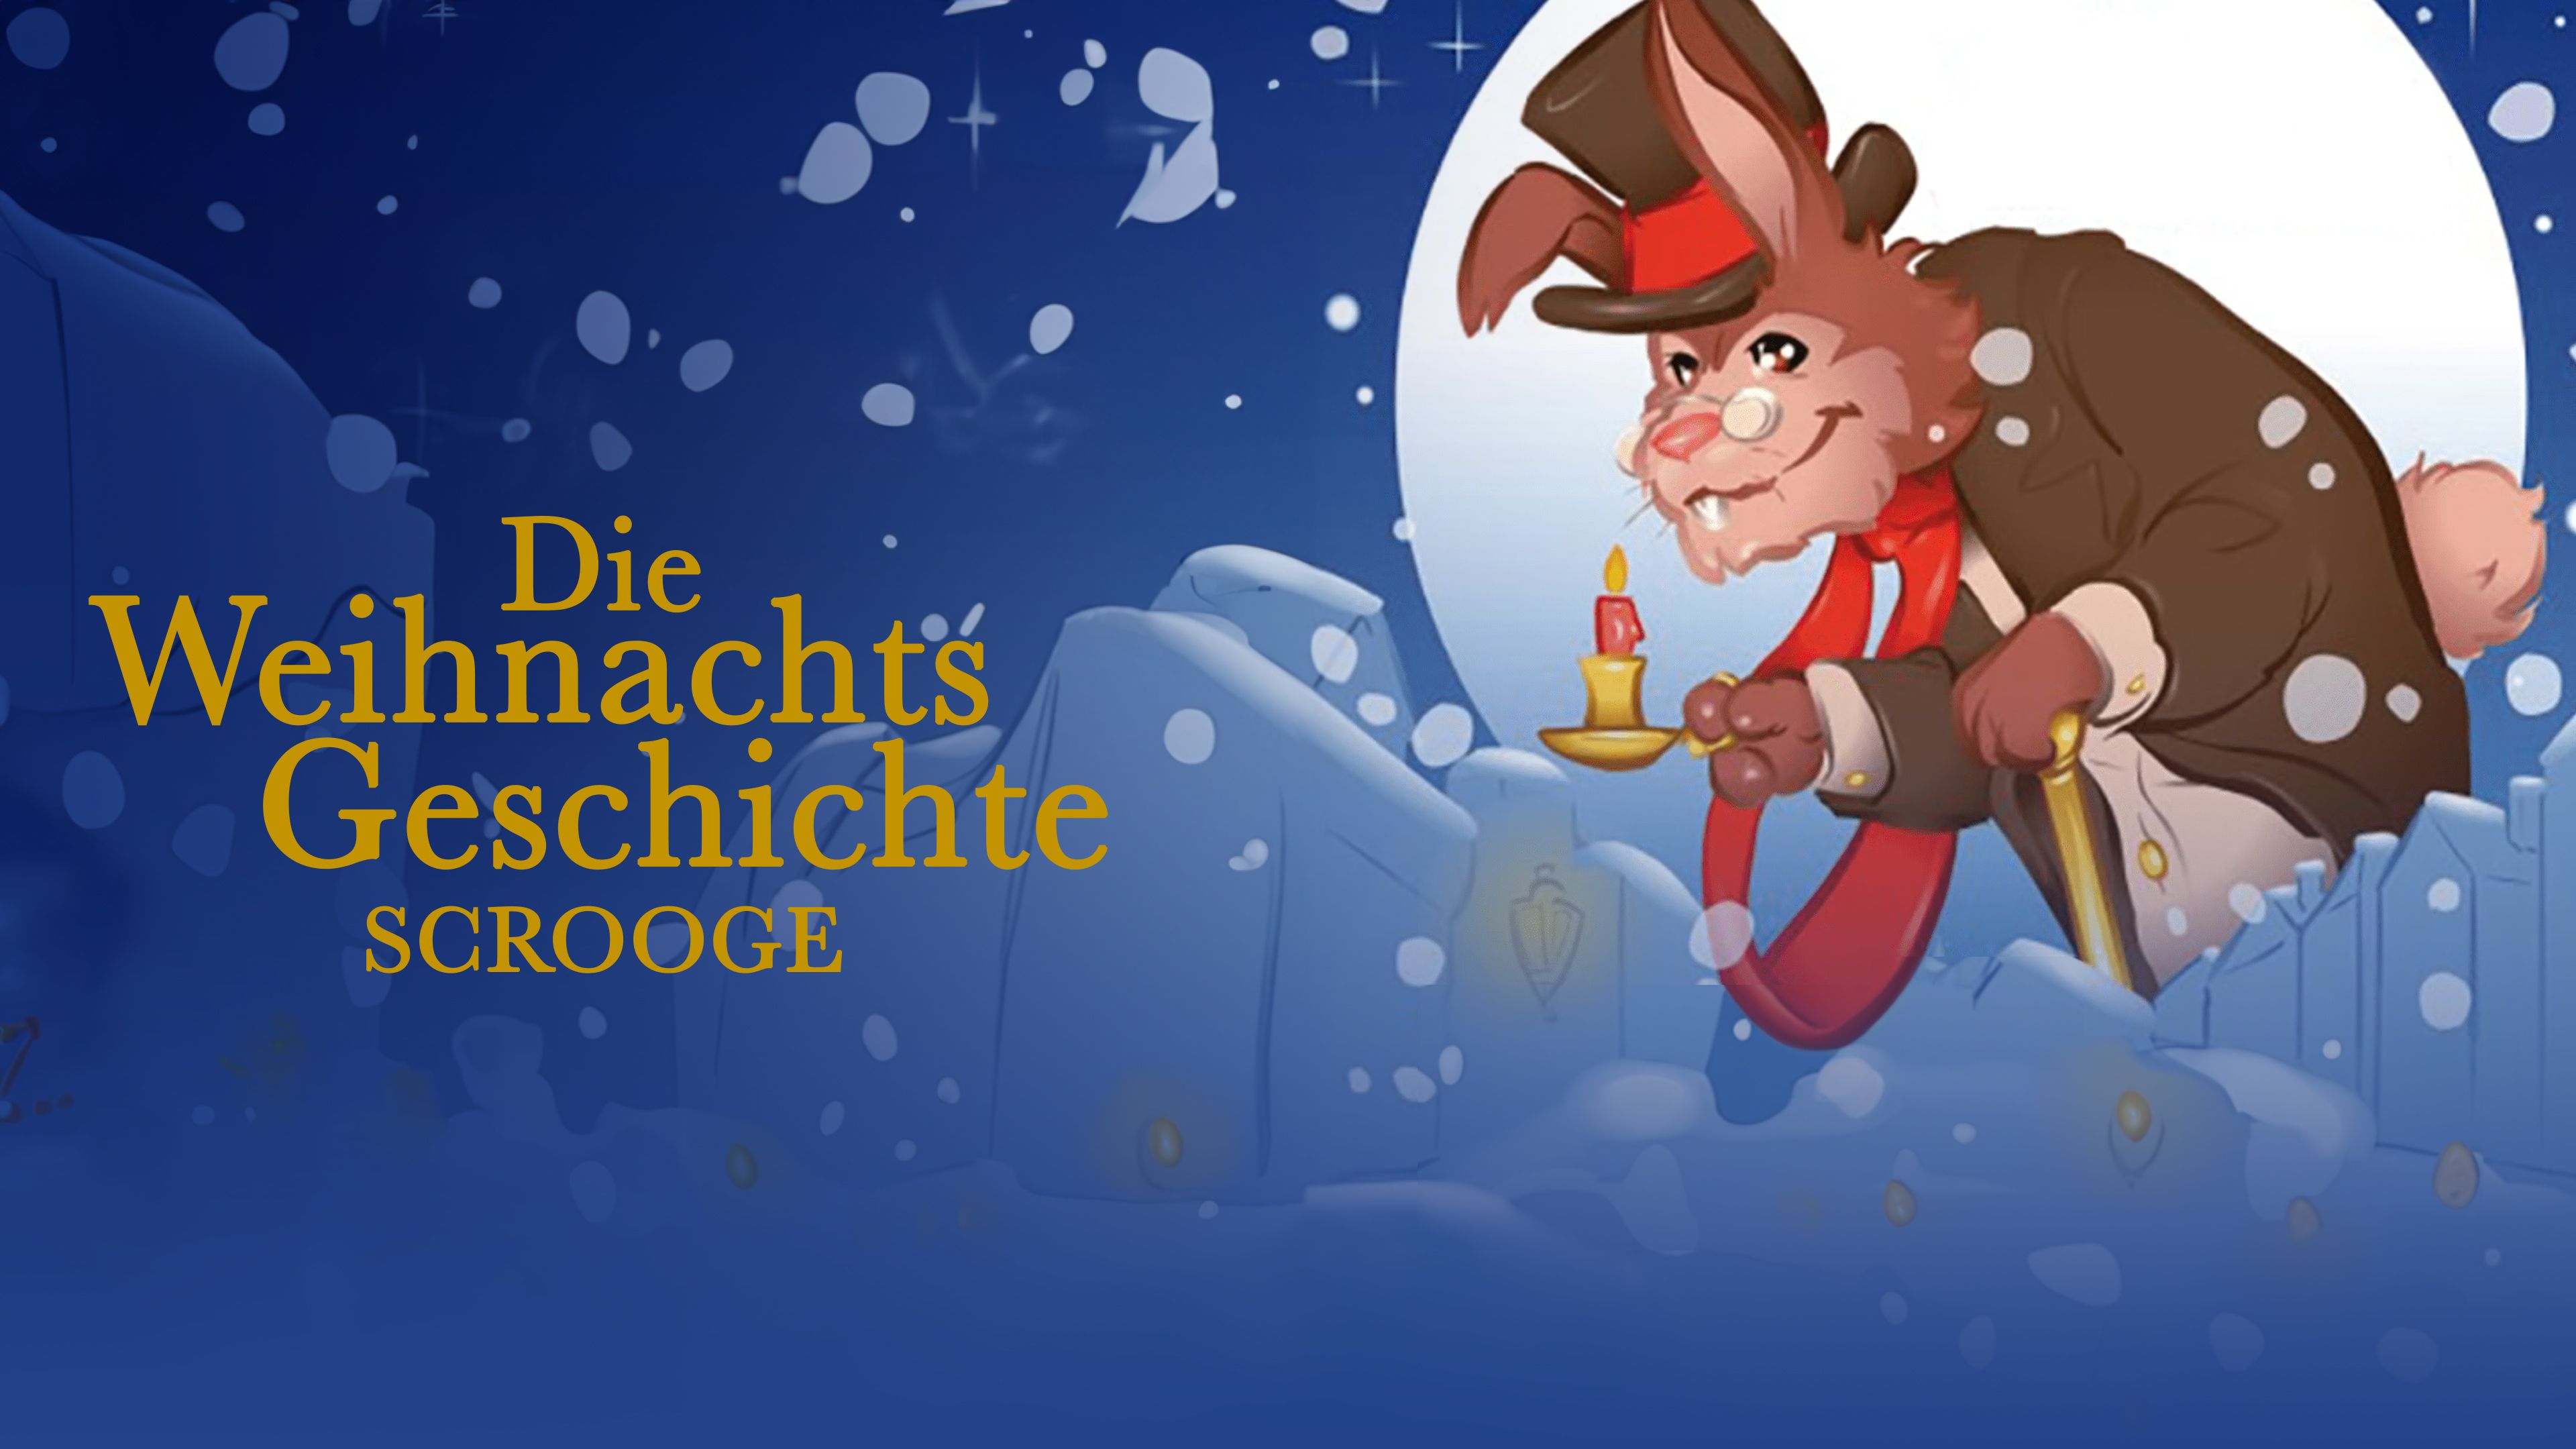 Die Weihnachtsgeschichte - Scrooge